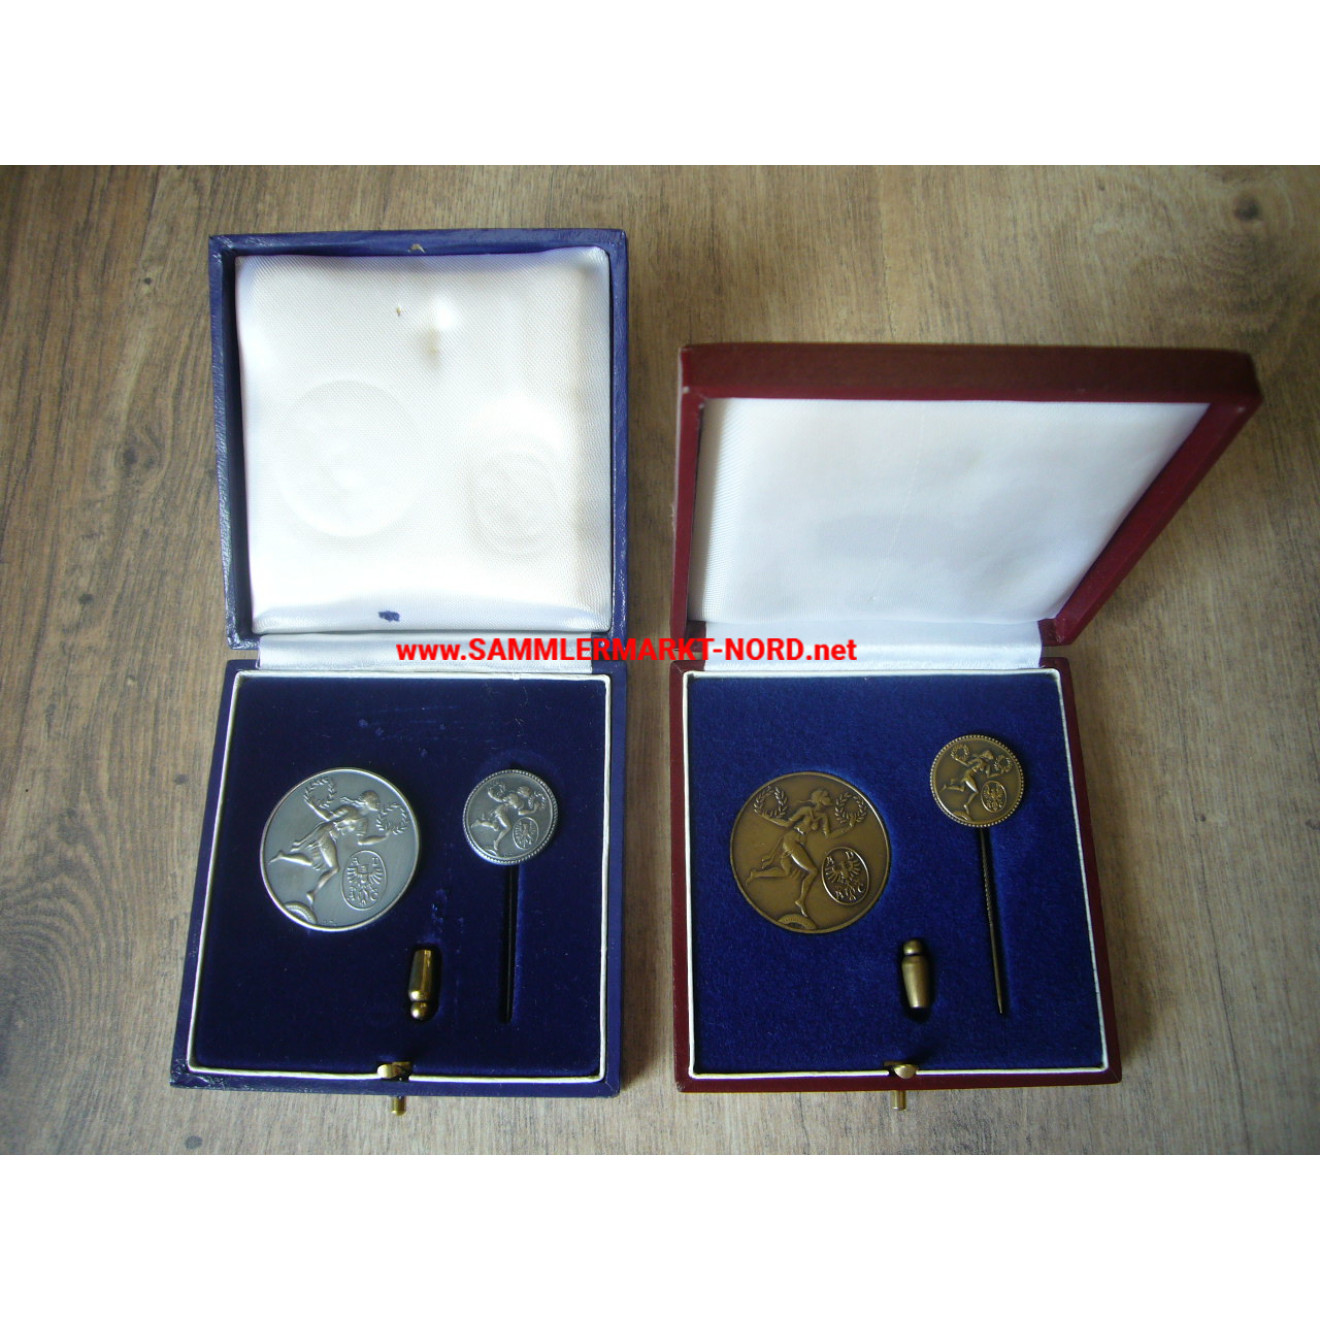 ADAC Allgemeine Deutsche Automobil-Club - 2 x bronze & silver medals in a case